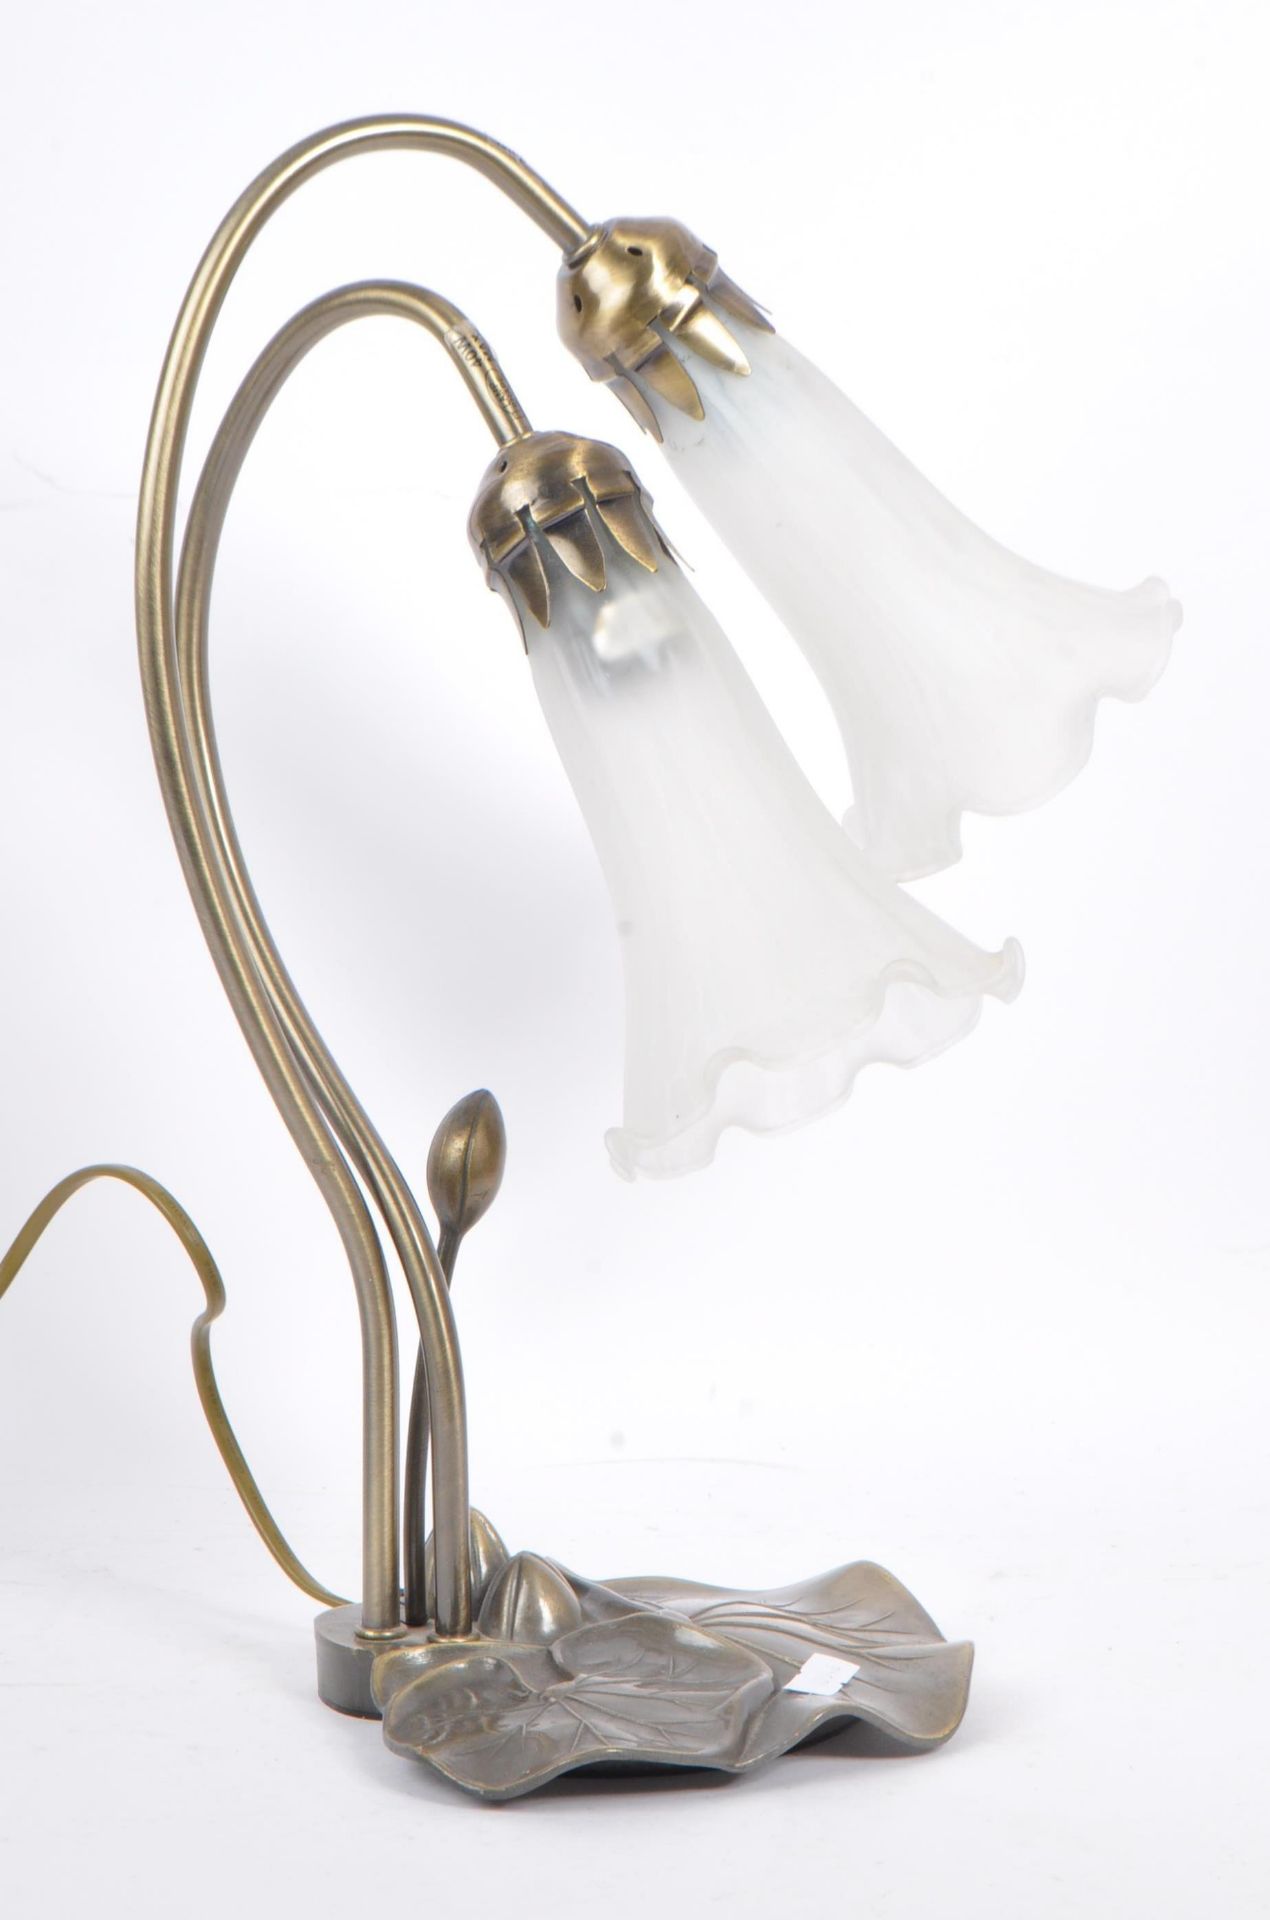 LATER 20TH CENTURY / ART NOUVEAU STYLE TABLE LAMP - Bild 2 aus 6